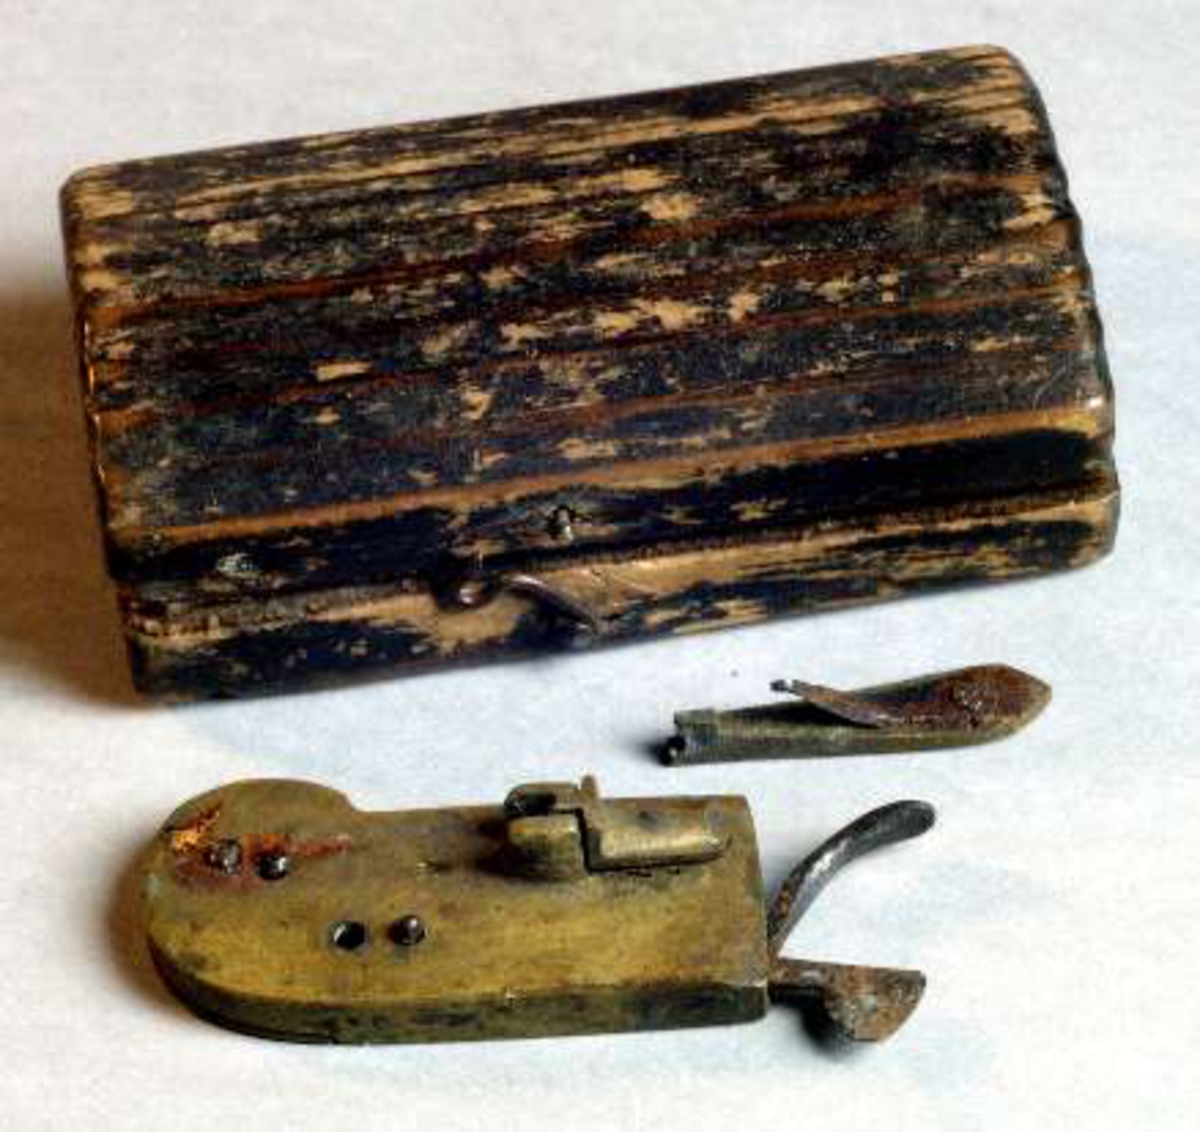 Rött träetui till ålderlåtningsredskap av mässing, med kniv av stål (UM08083b).